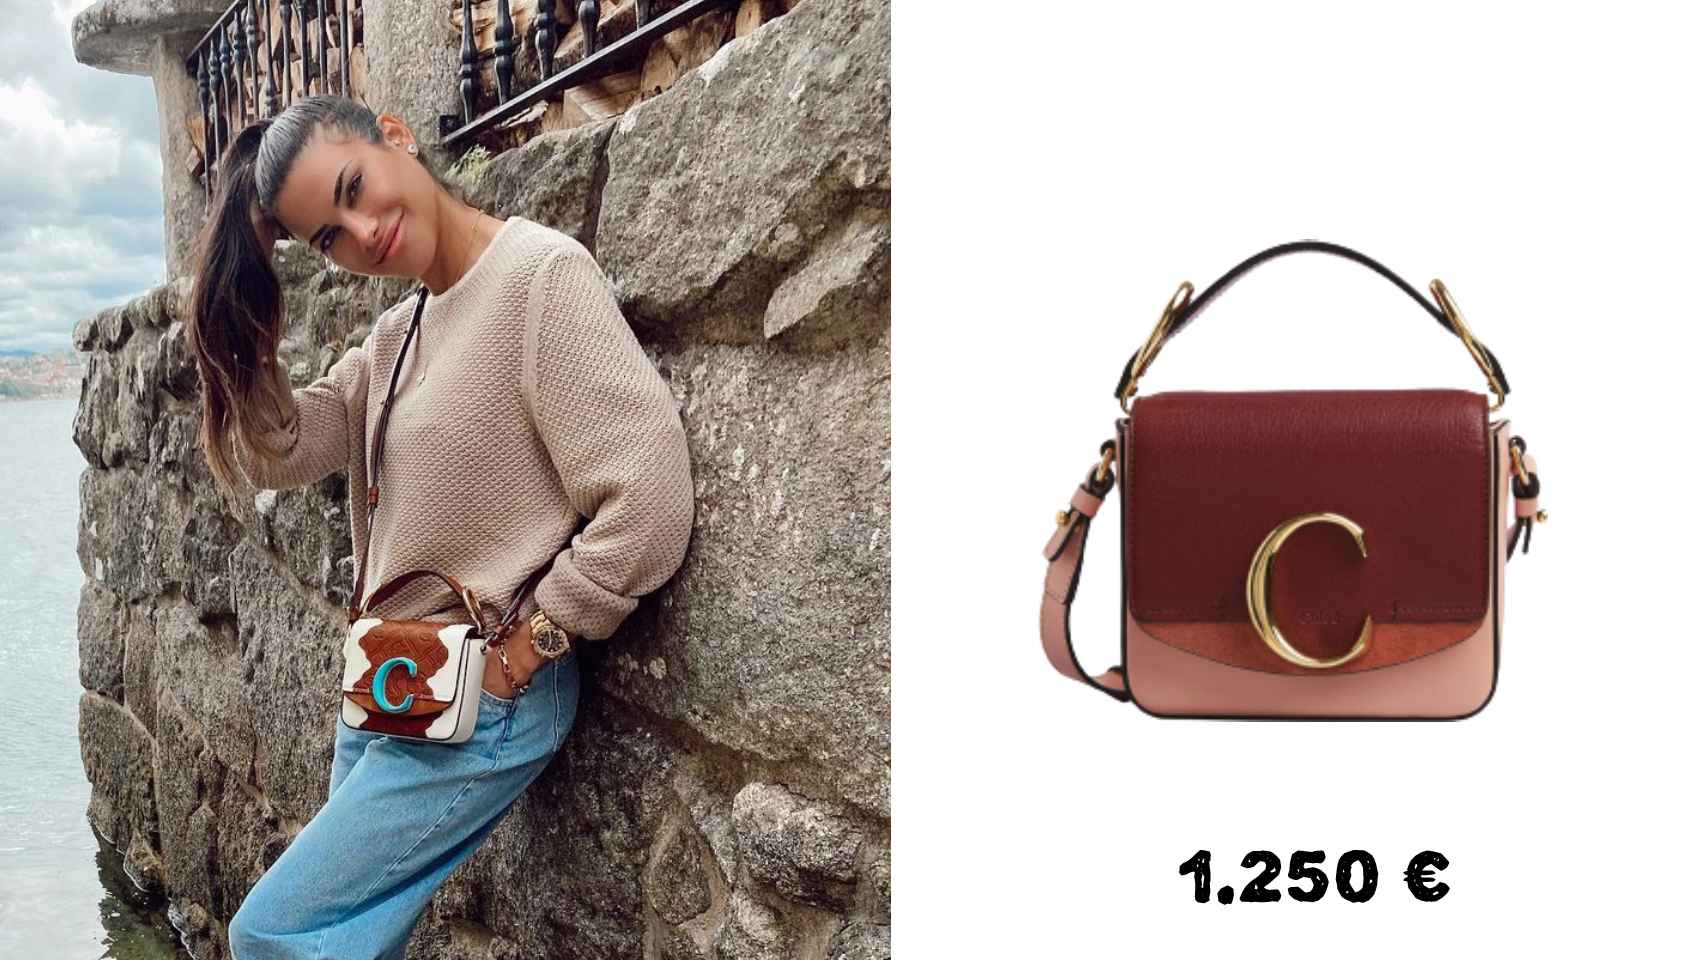 El bolso de Chloé de Carla cuesta 1.250 euros y es de edición limitada.